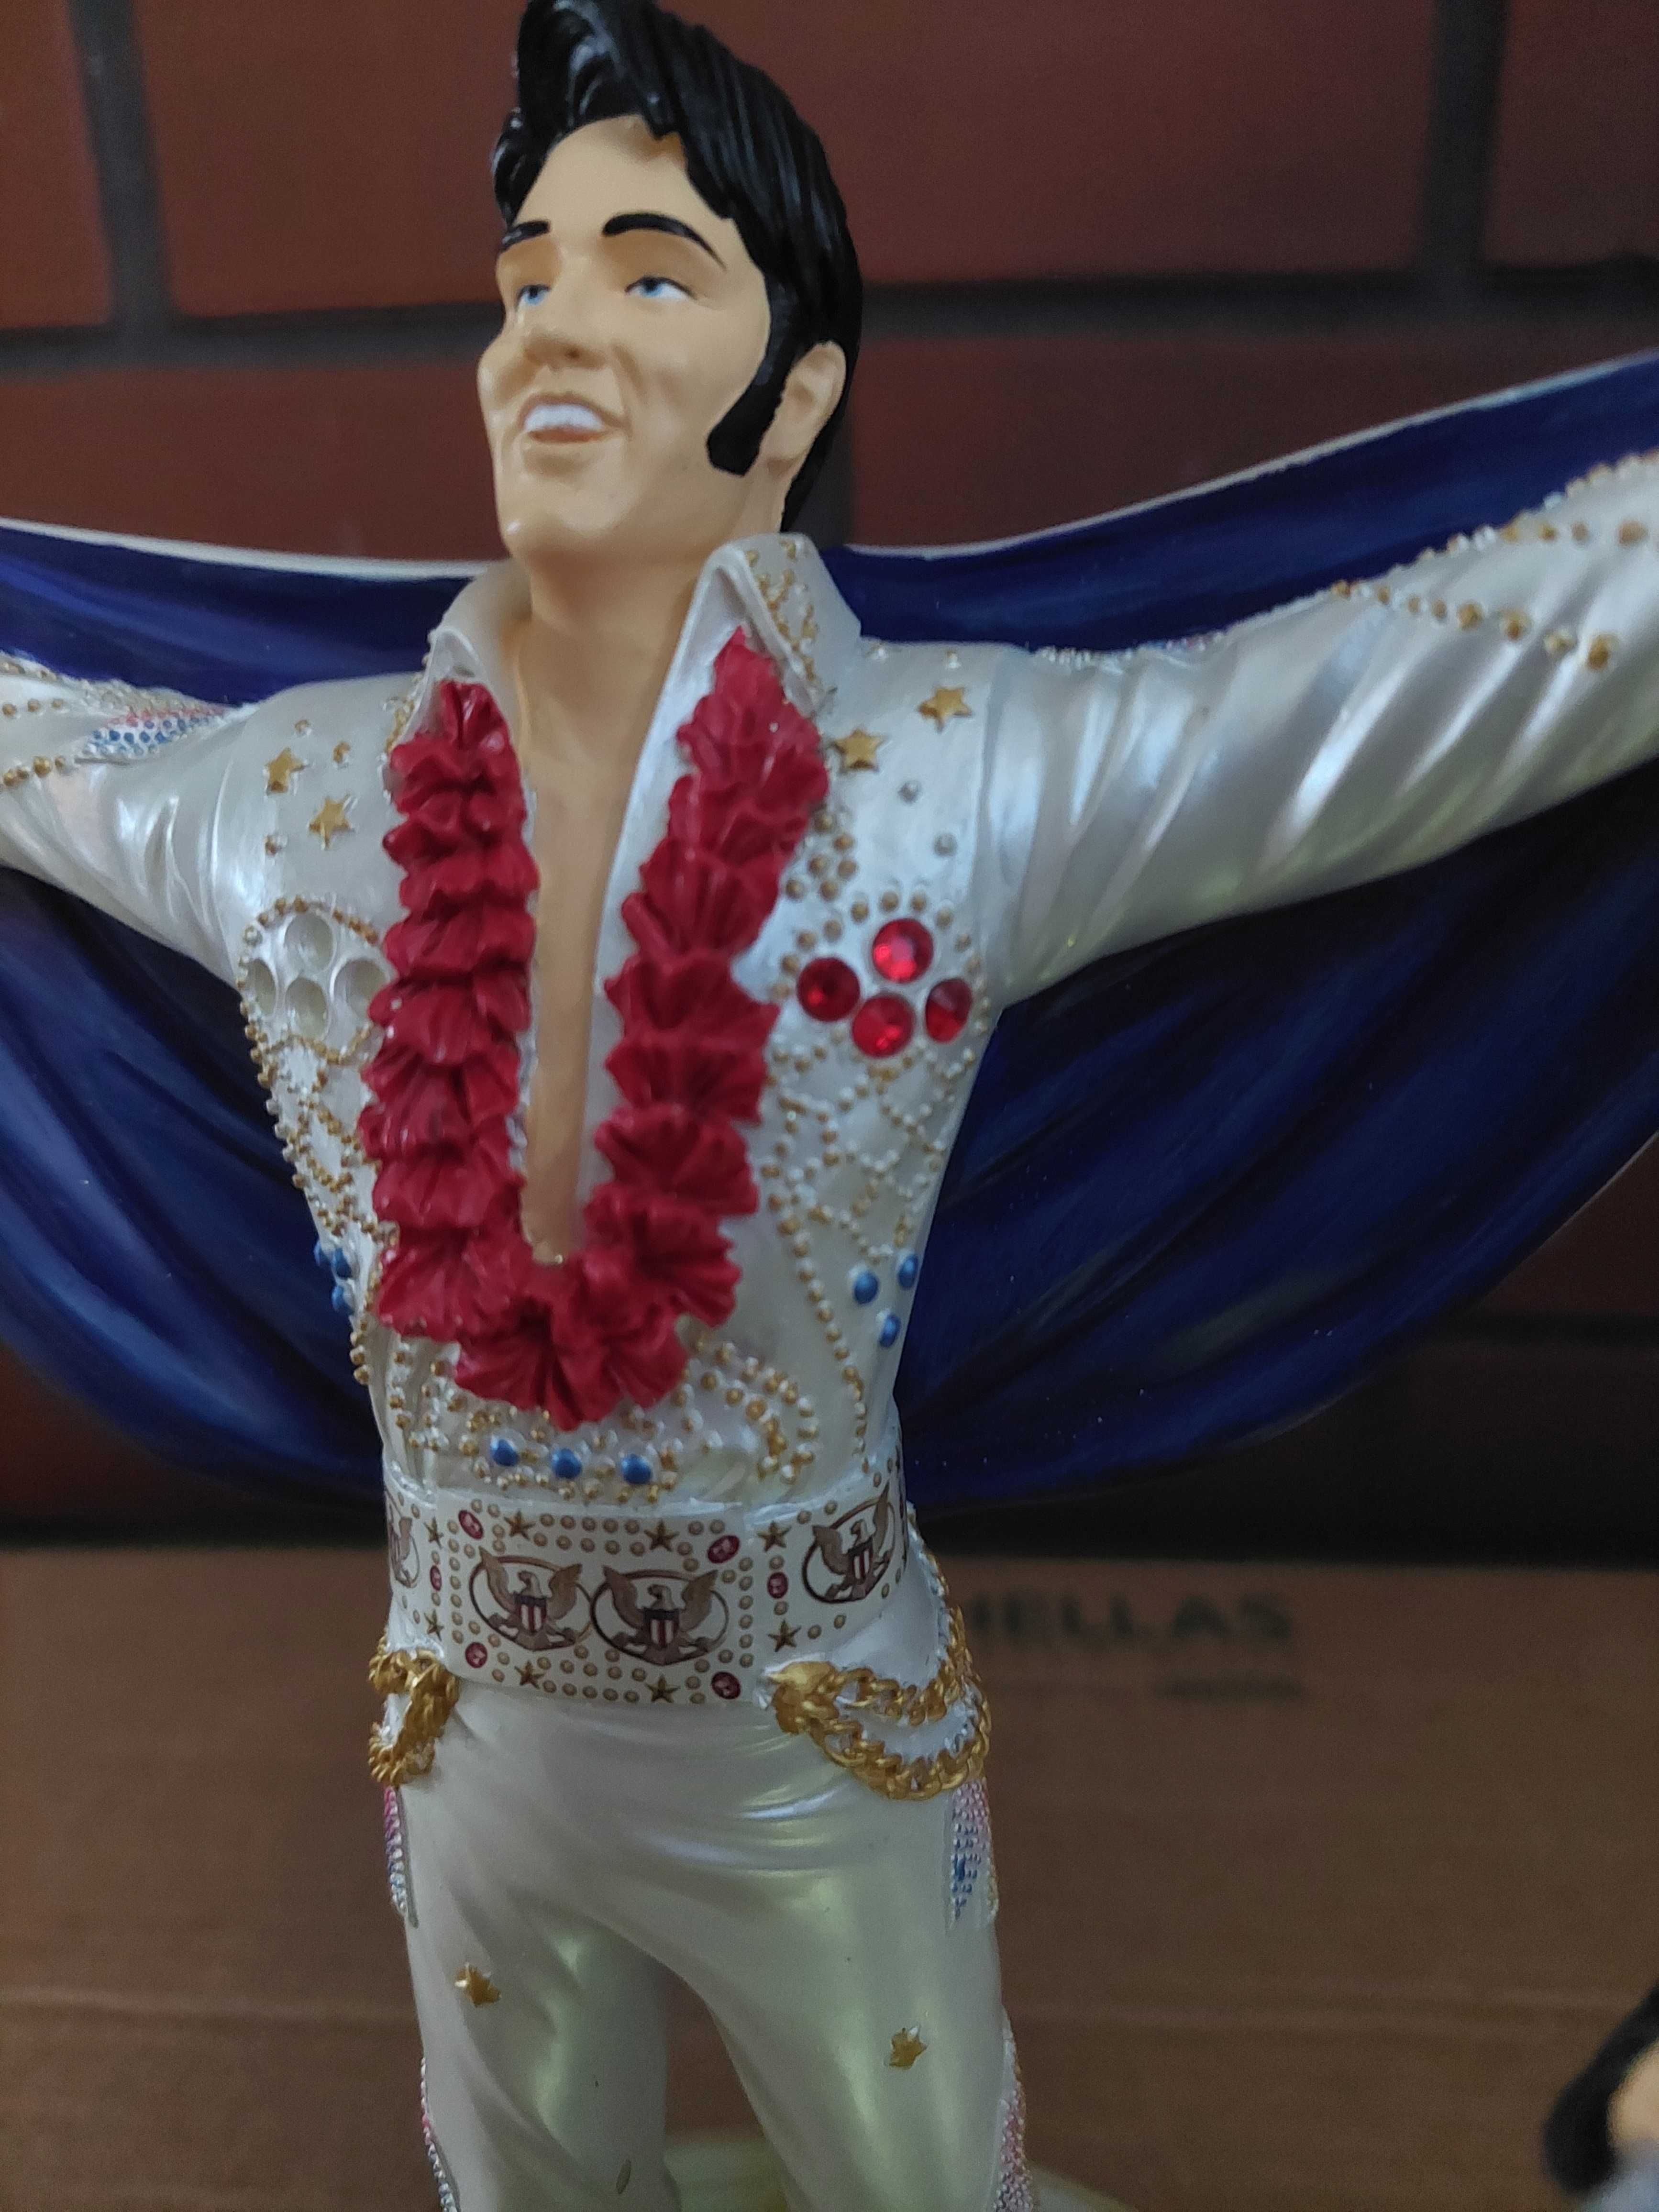 Elvis Presley król rock n roll statuetka podswietlana